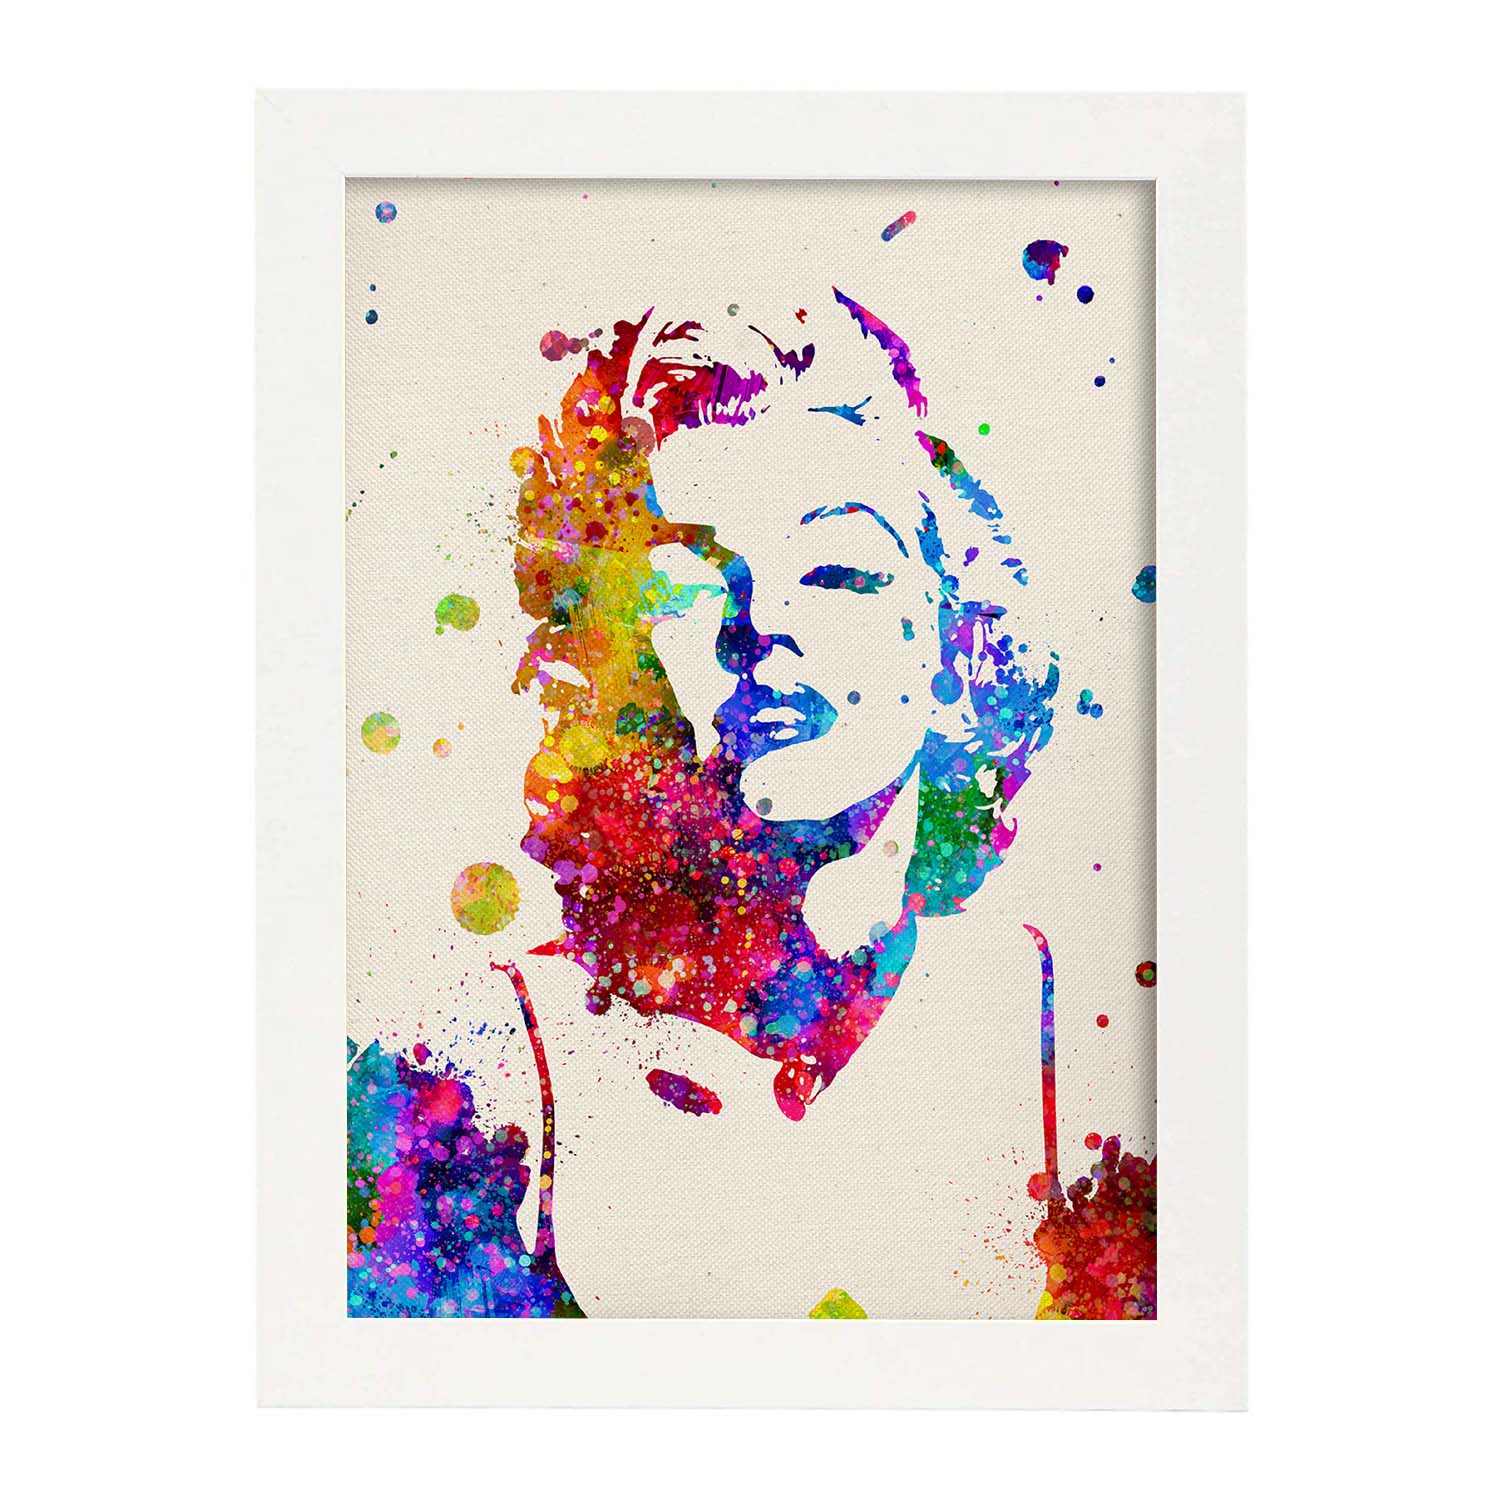 Poster imagen de Marilyn Monroe. Posters con diseño acuarela de famosos, actores, músicos-Artwork-Nacnic-A3-Marco Blanco-Nacnic Estudio SL